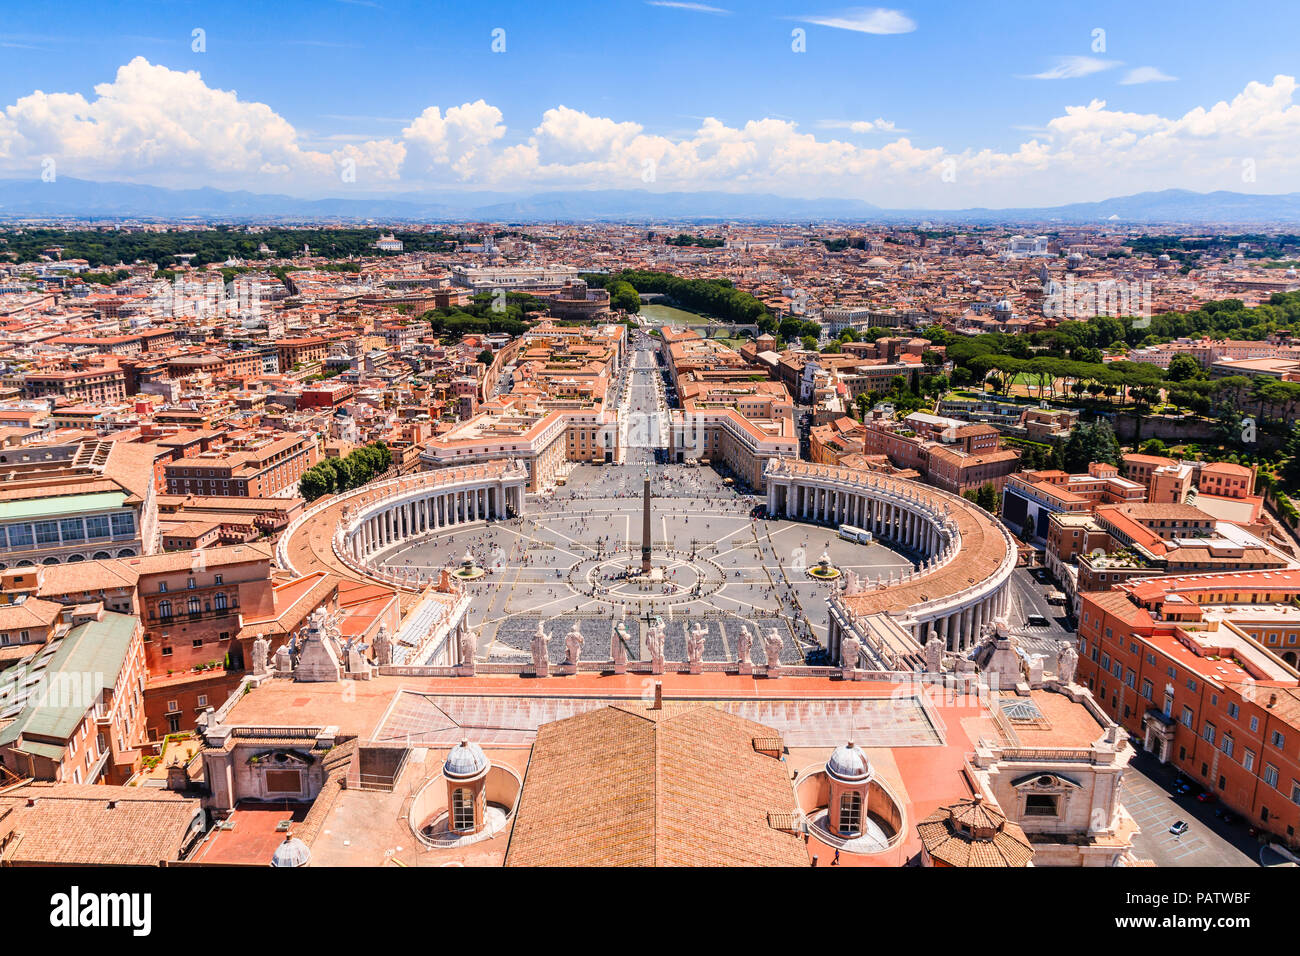 Rom, Italien. Berühmten Petersplatz im Vatikan und Luftaufnahmen Blick auf die Stadt. Stockfoto